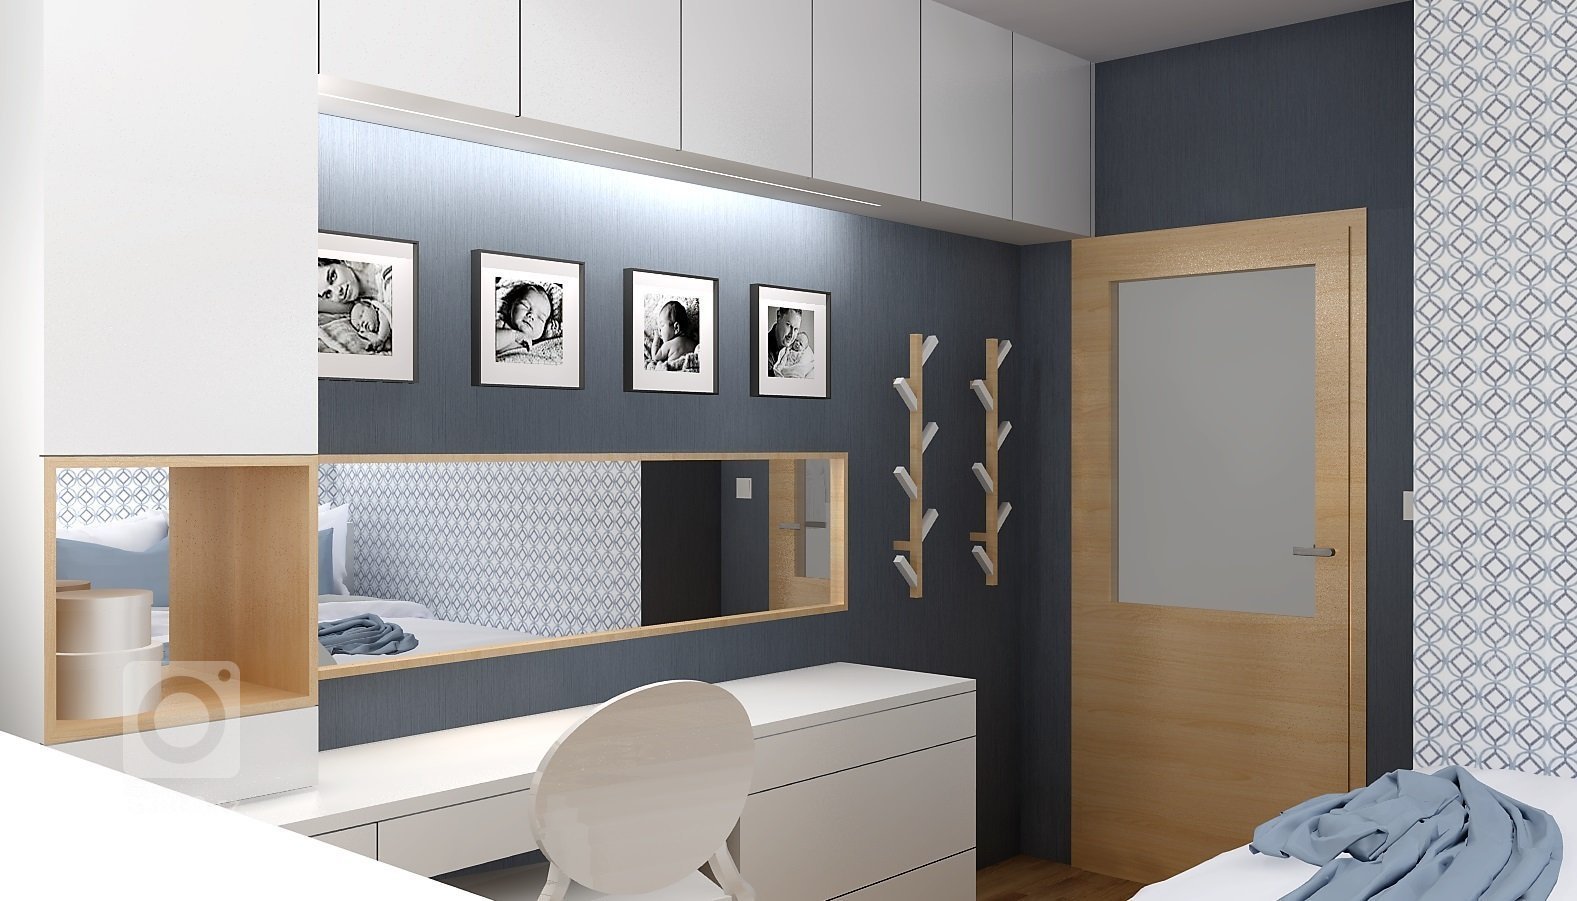 Odstíny modré v kombinaci s bílým laminem a světlým dřevodekorem vytváří příjemné prostředí pro odpočinek. V nejmenší místnosti bytu vznikl návrh plnohodnotné…